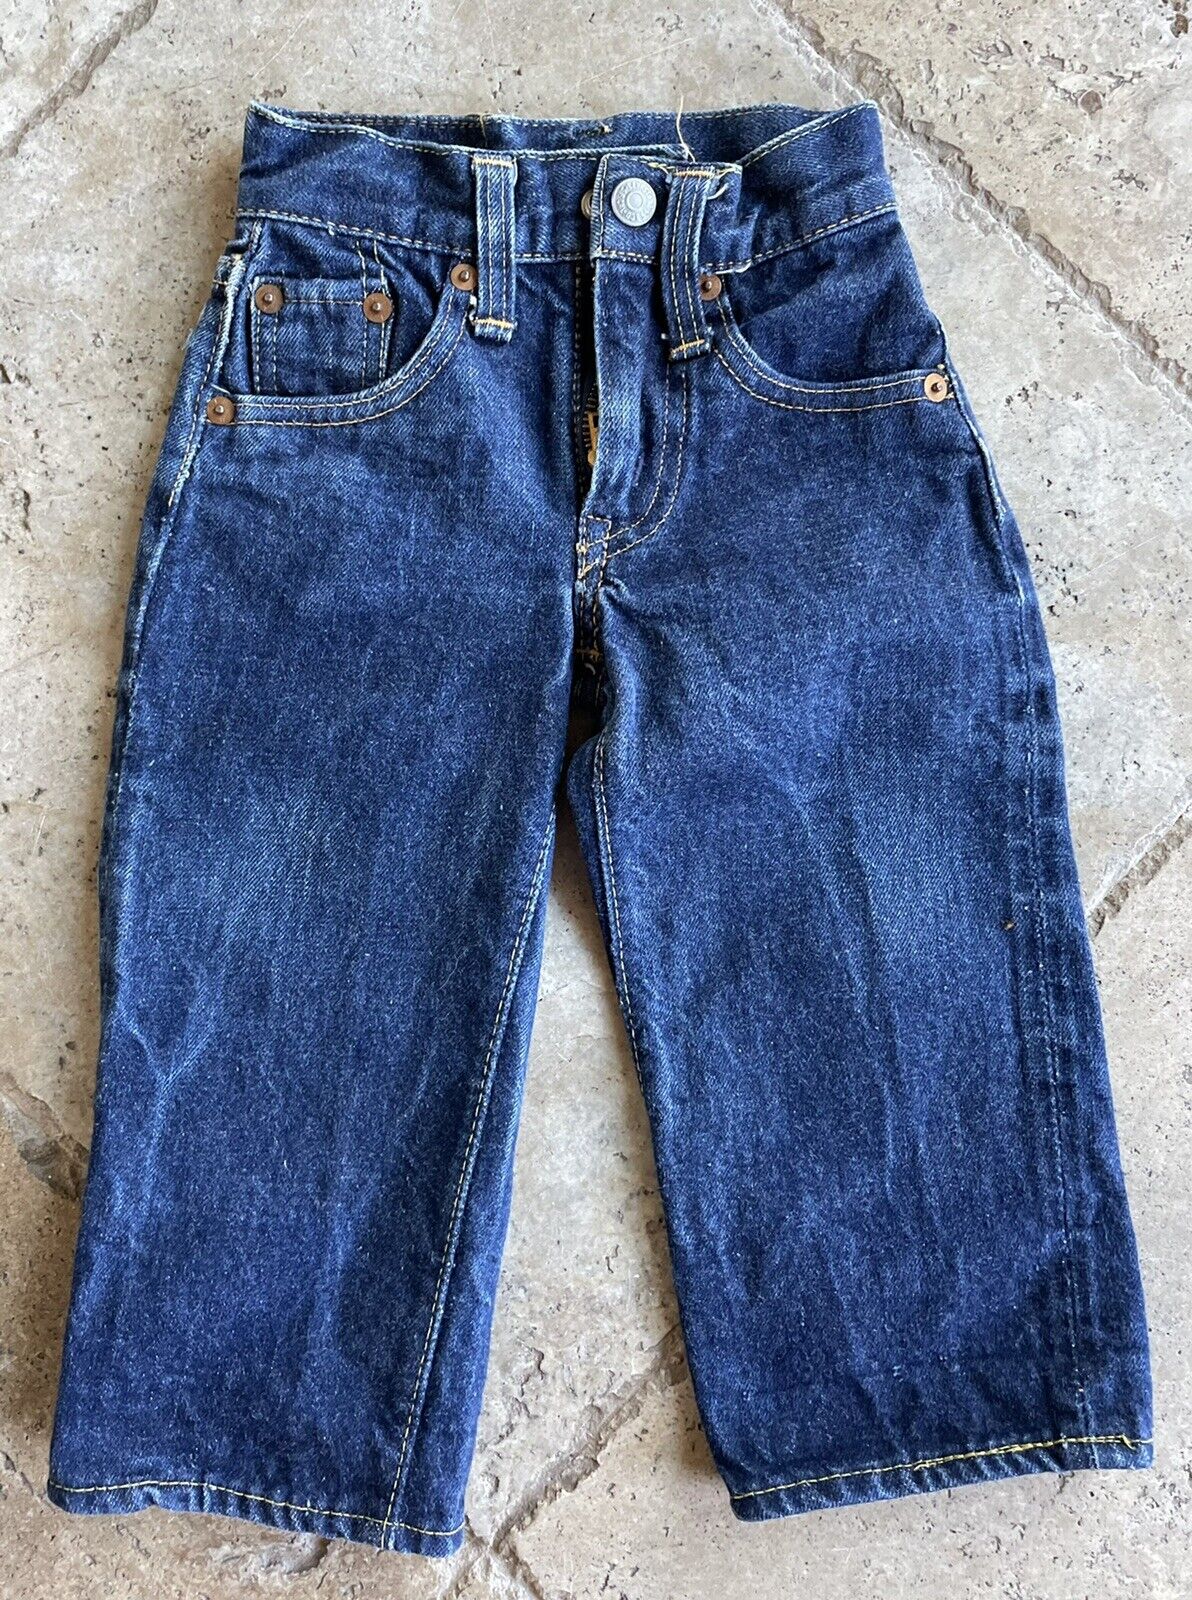 Vtg Levis 50s Hidden Rivet Big E Selvedge Red Line Jeans Infant Size 0 Indigo